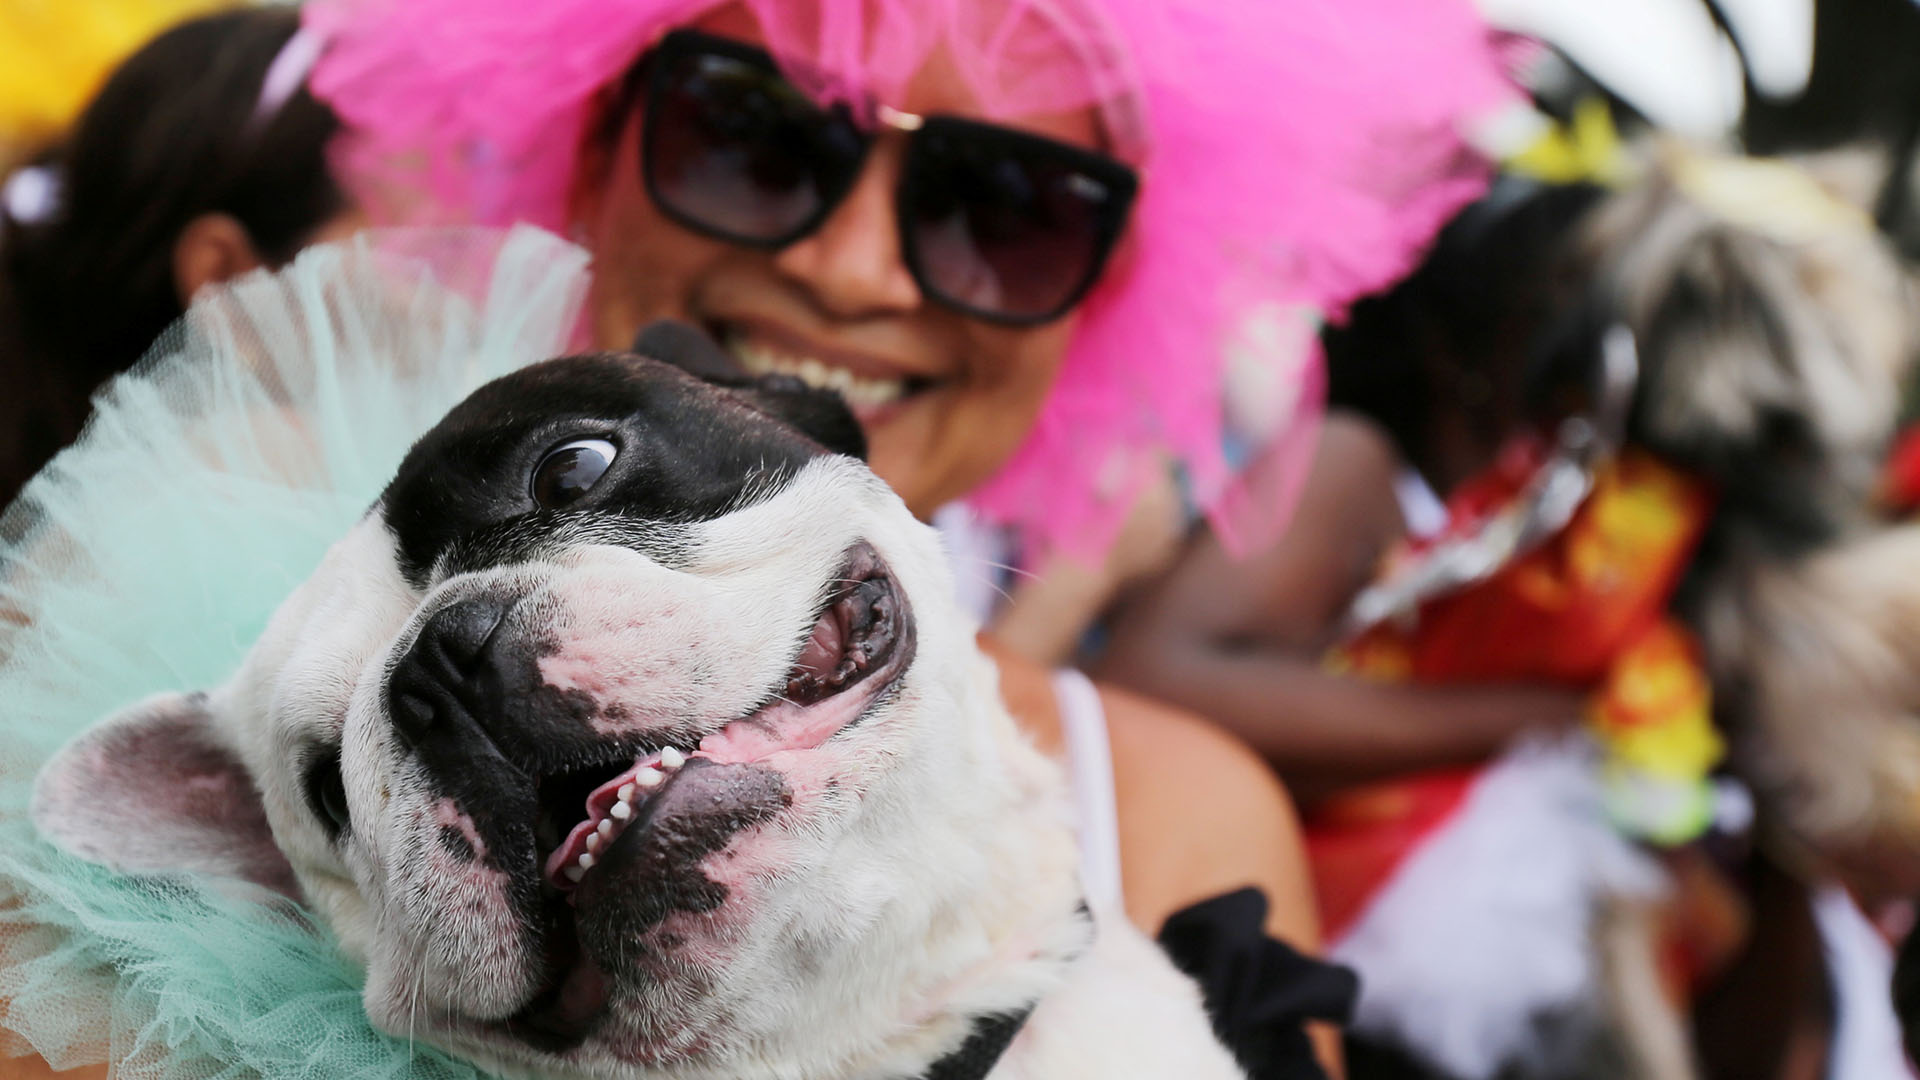 Бразильский карнавал в рио-де-жанейро: самба никогда не лжет